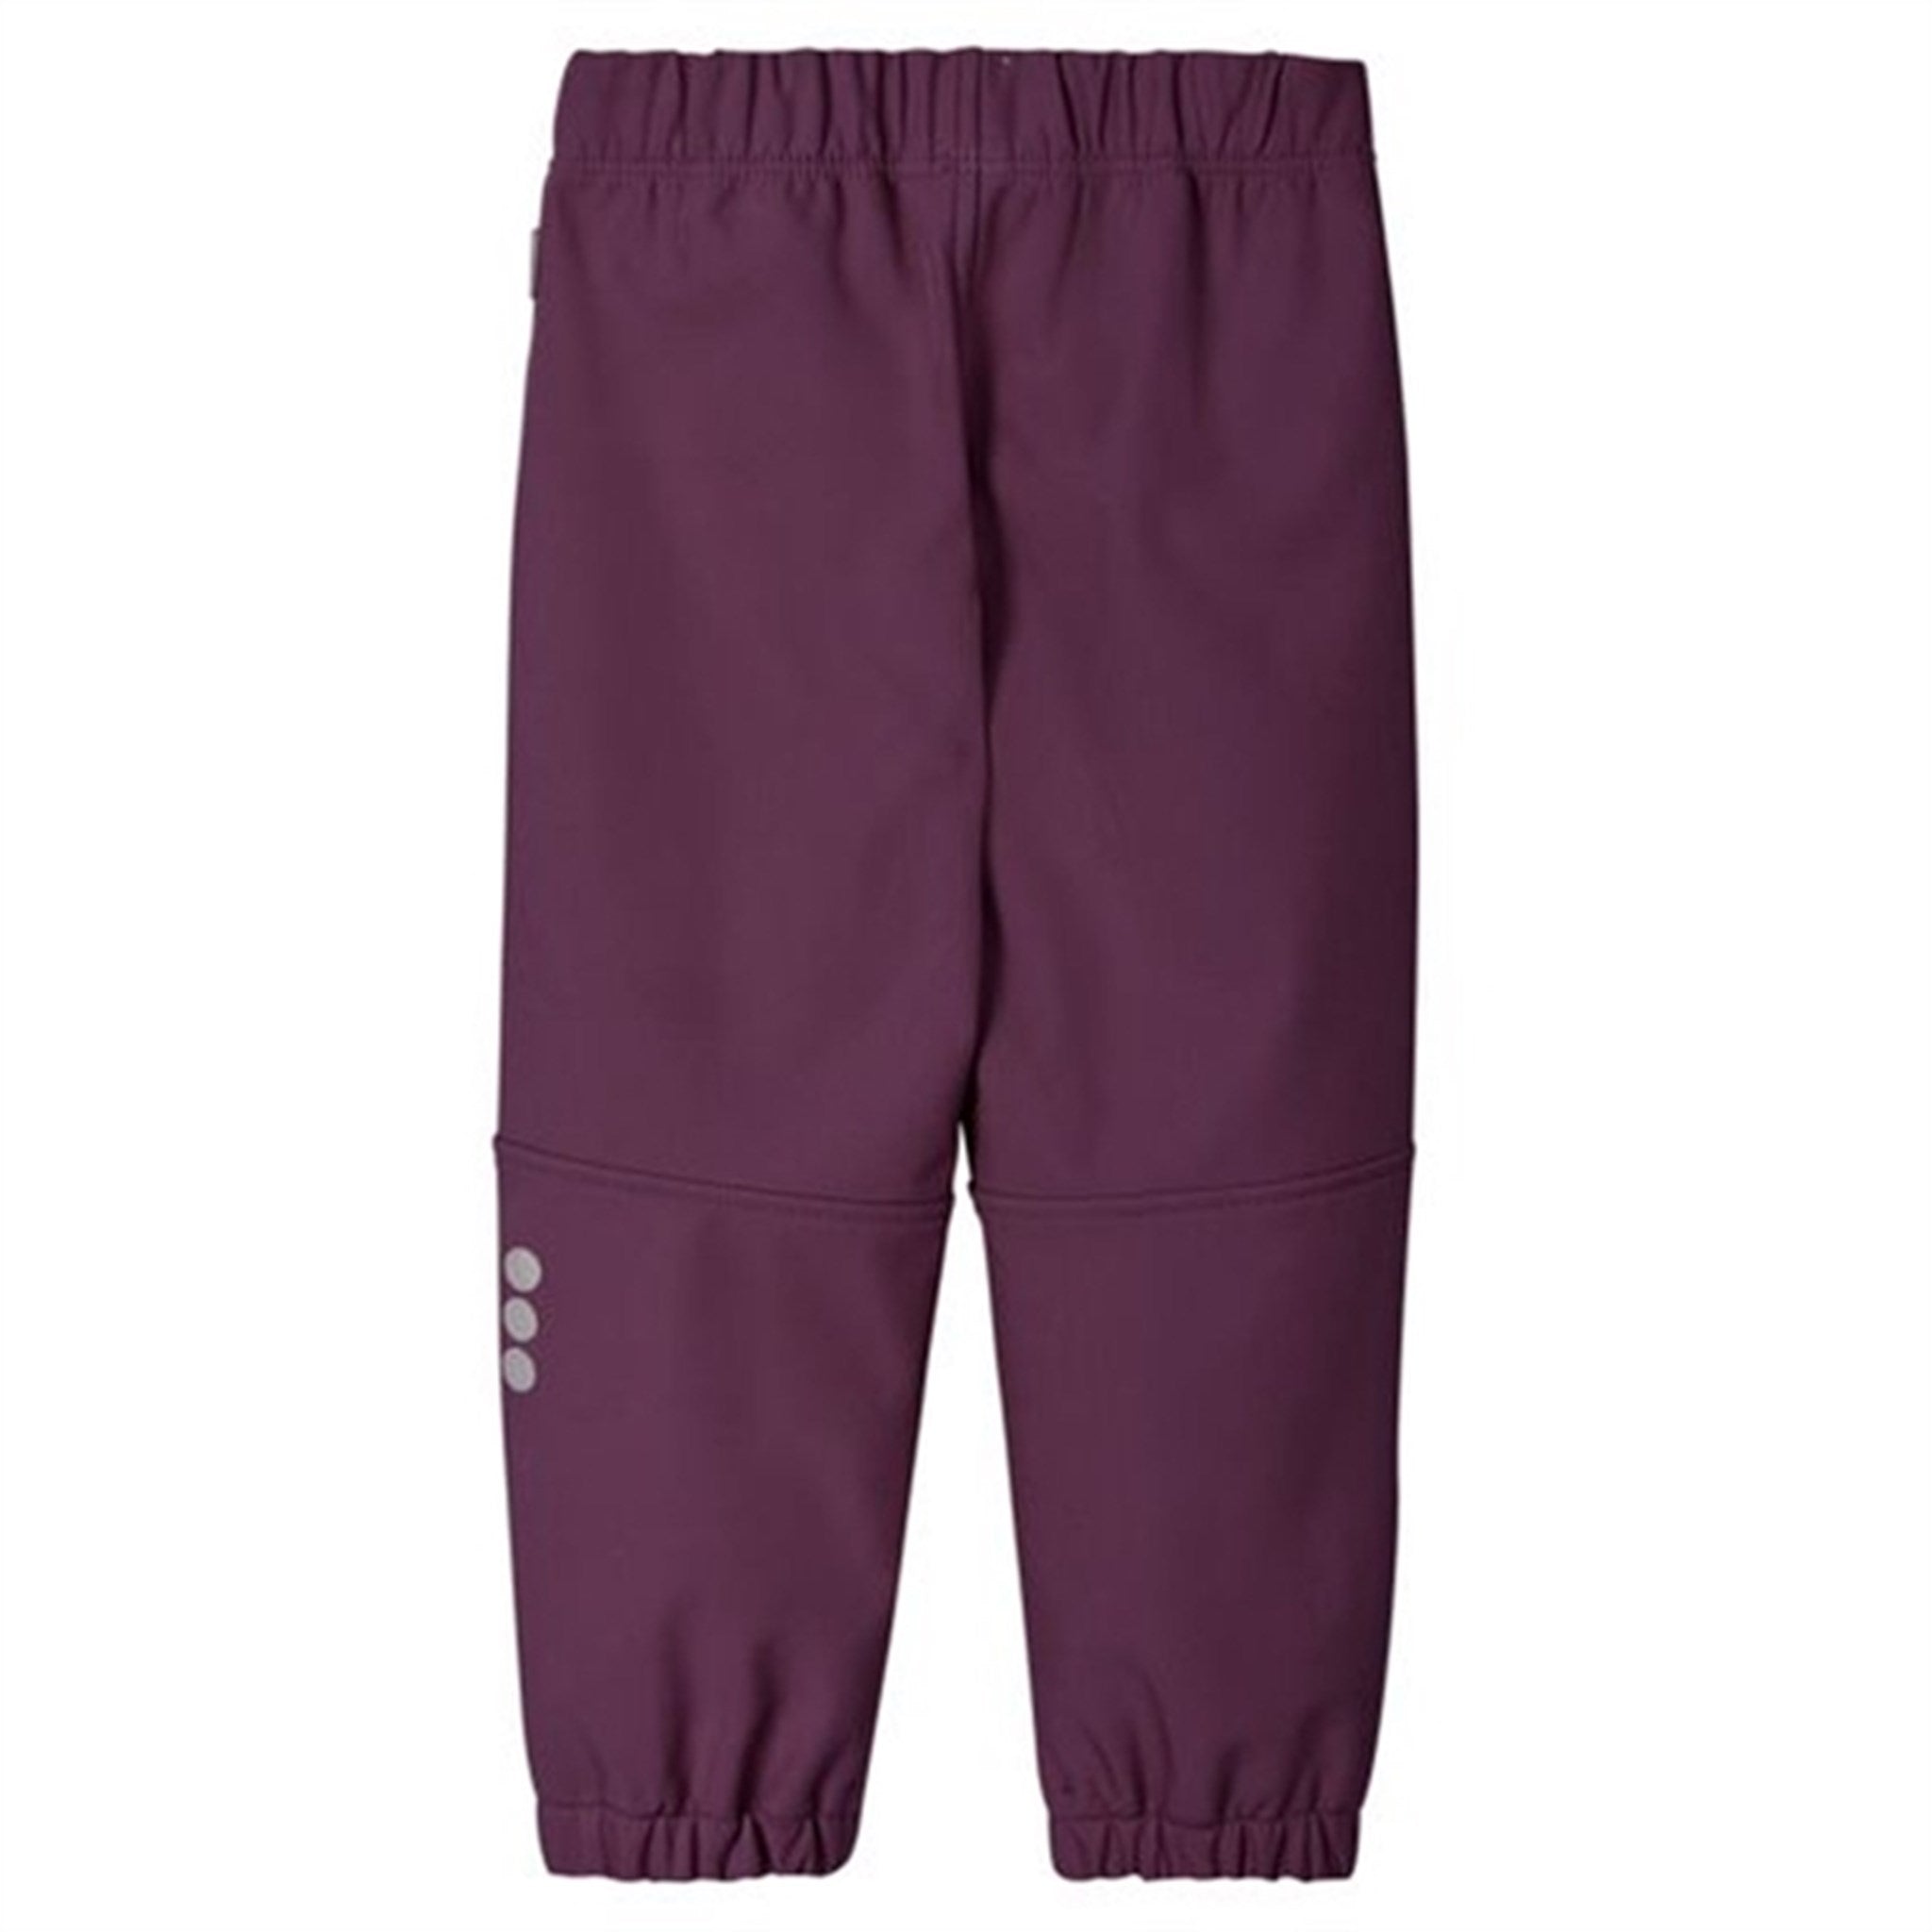 Reima Softshell Pants Oikotie Deep purple 7